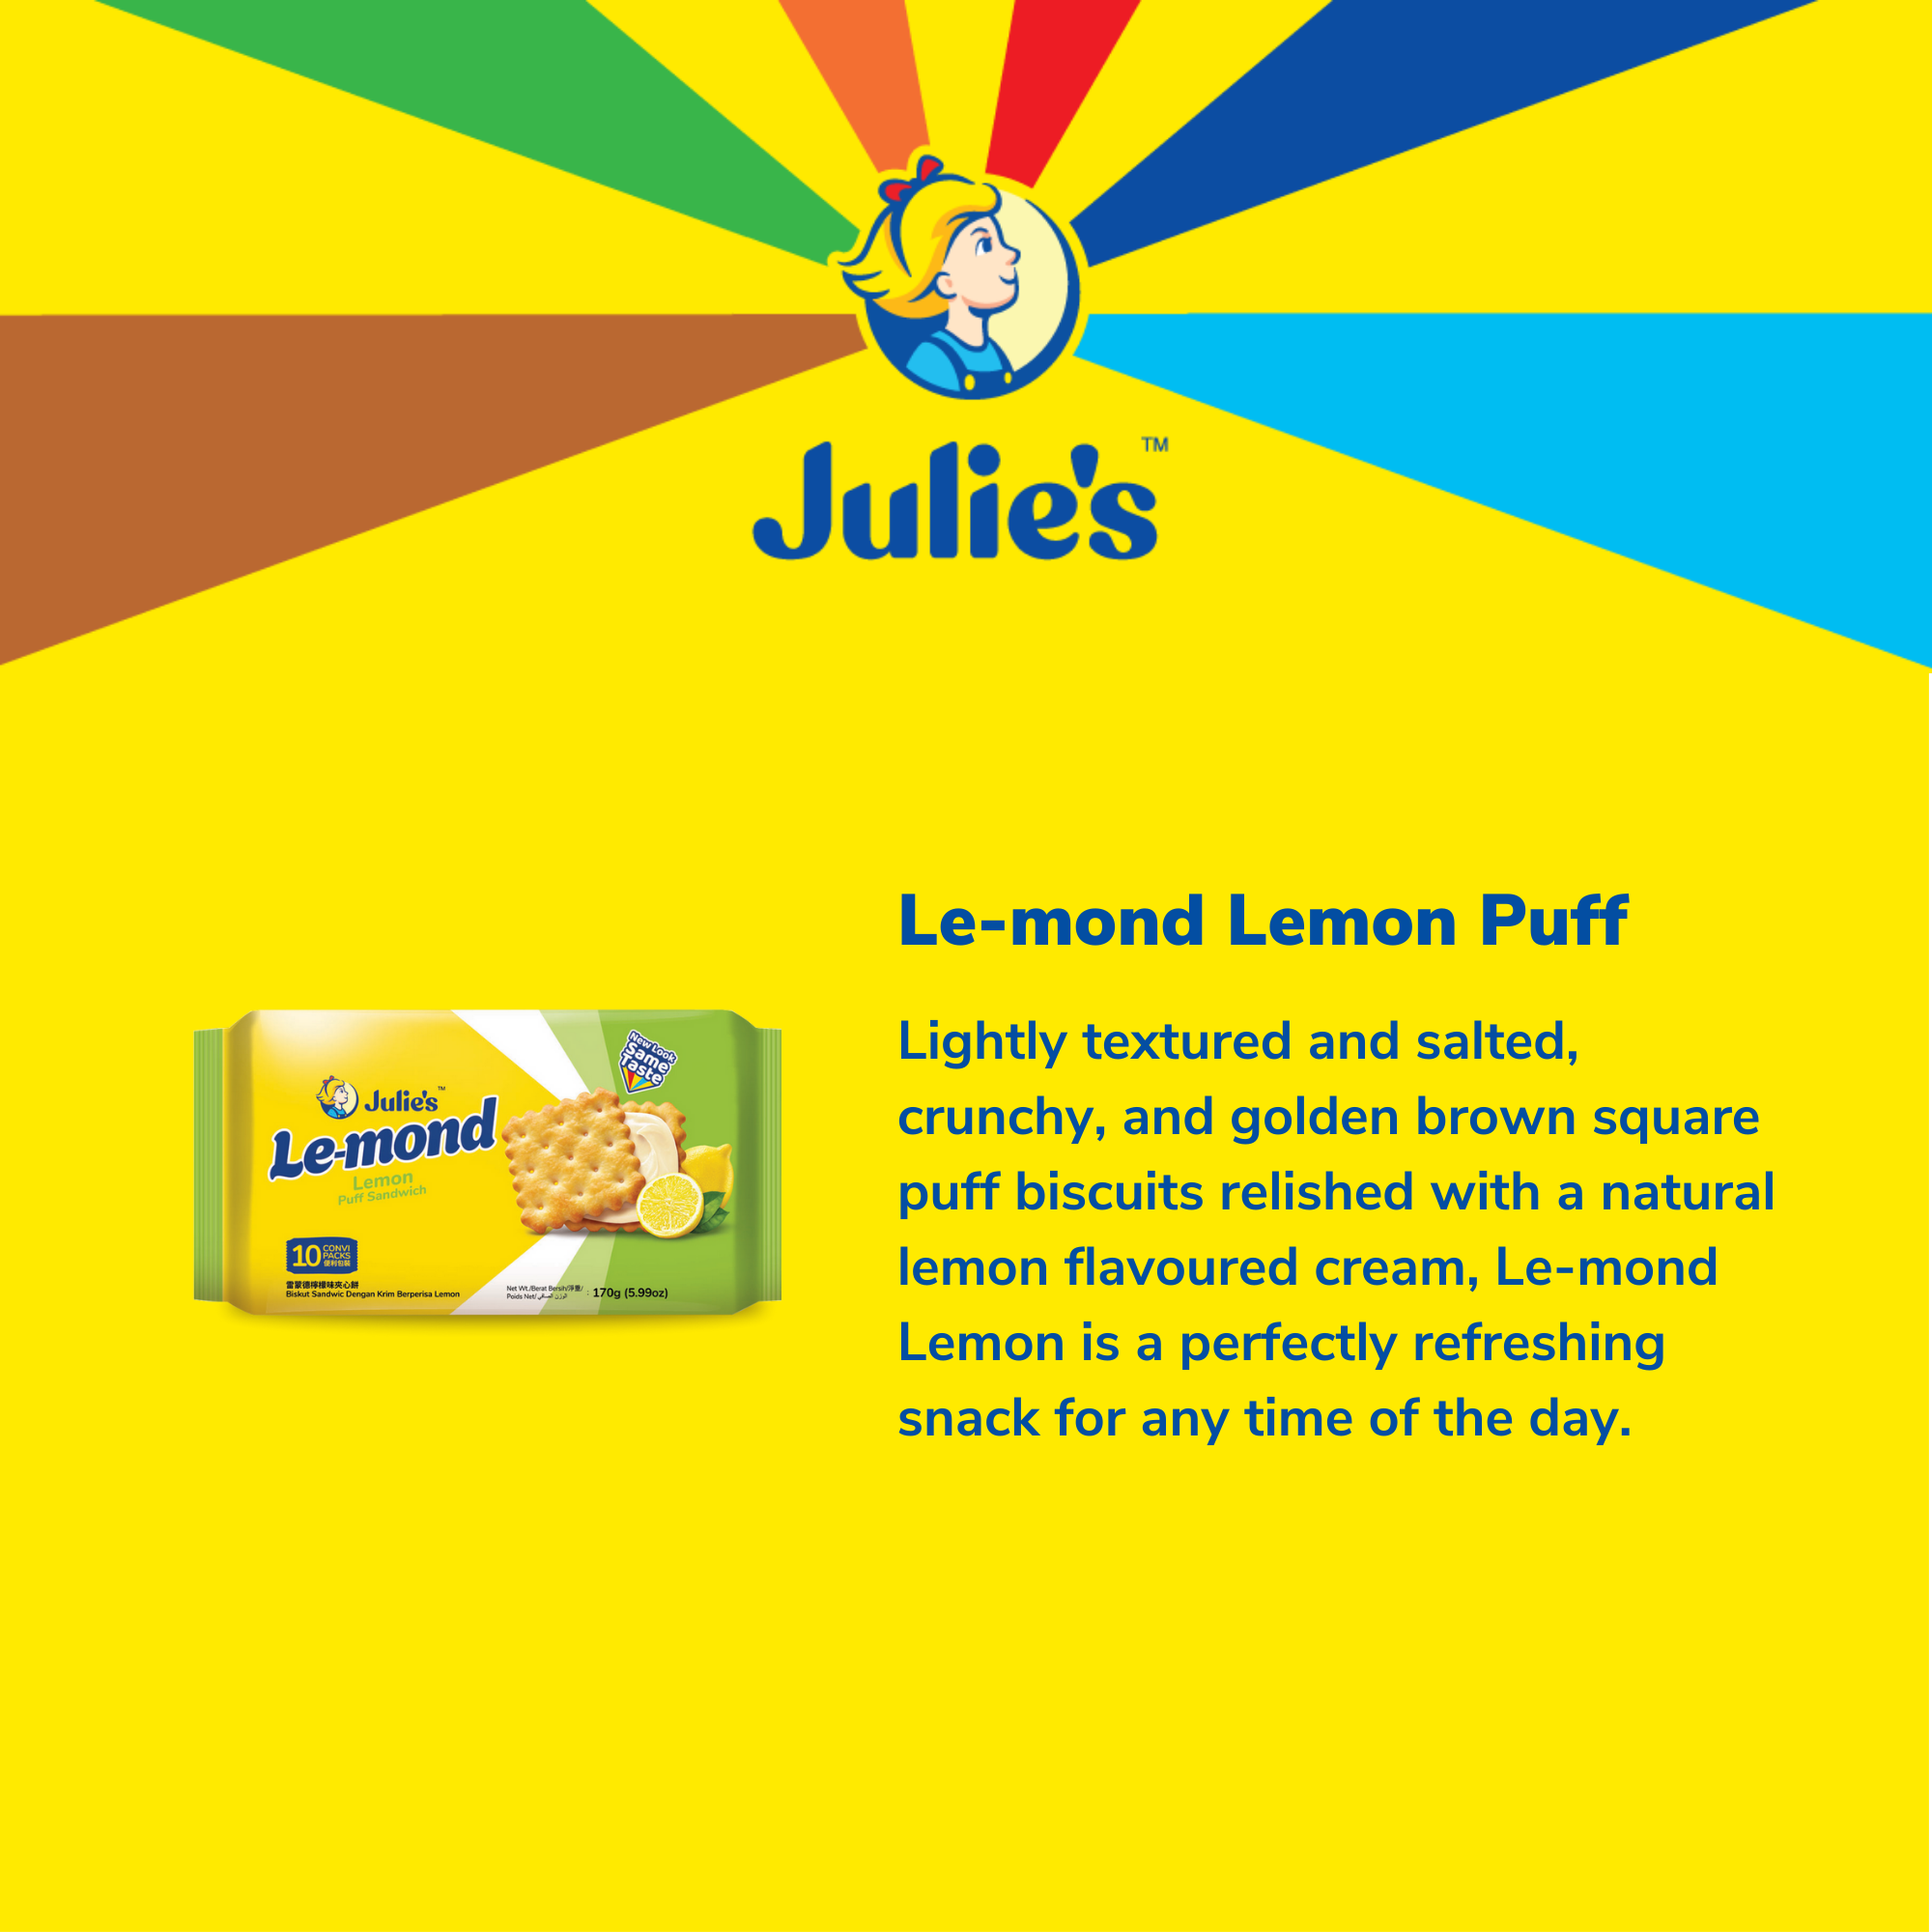 Julie's Le-mond Lemon Puff Sandwich 170g x 1 pack